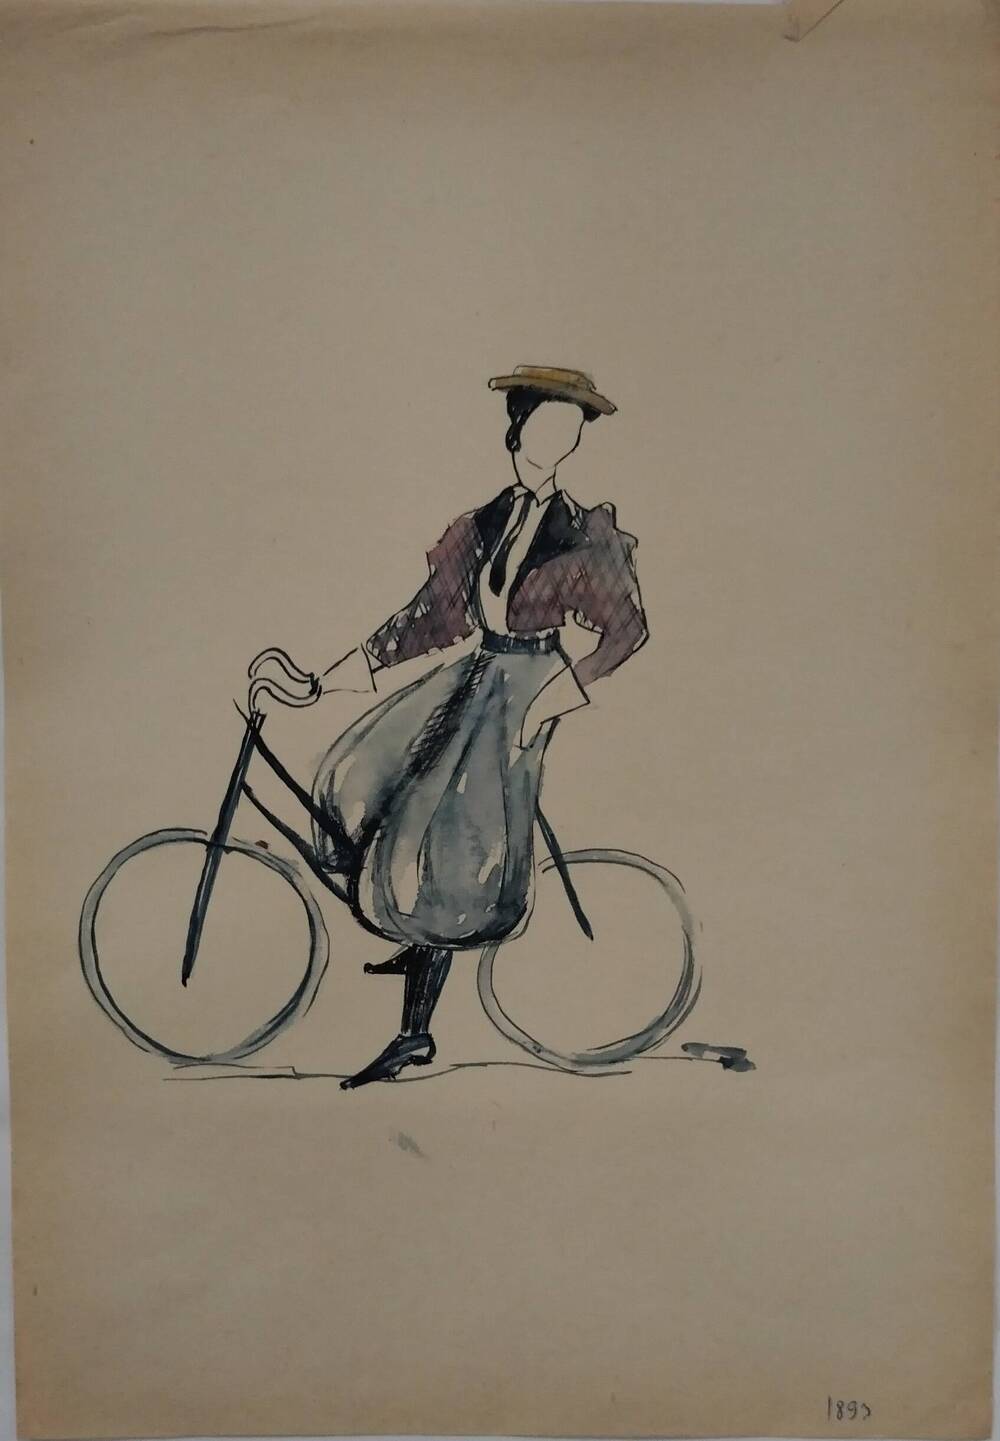 Чернышова Г.А. Эскиз женского костюма для езды на велосипеде 1893 г.